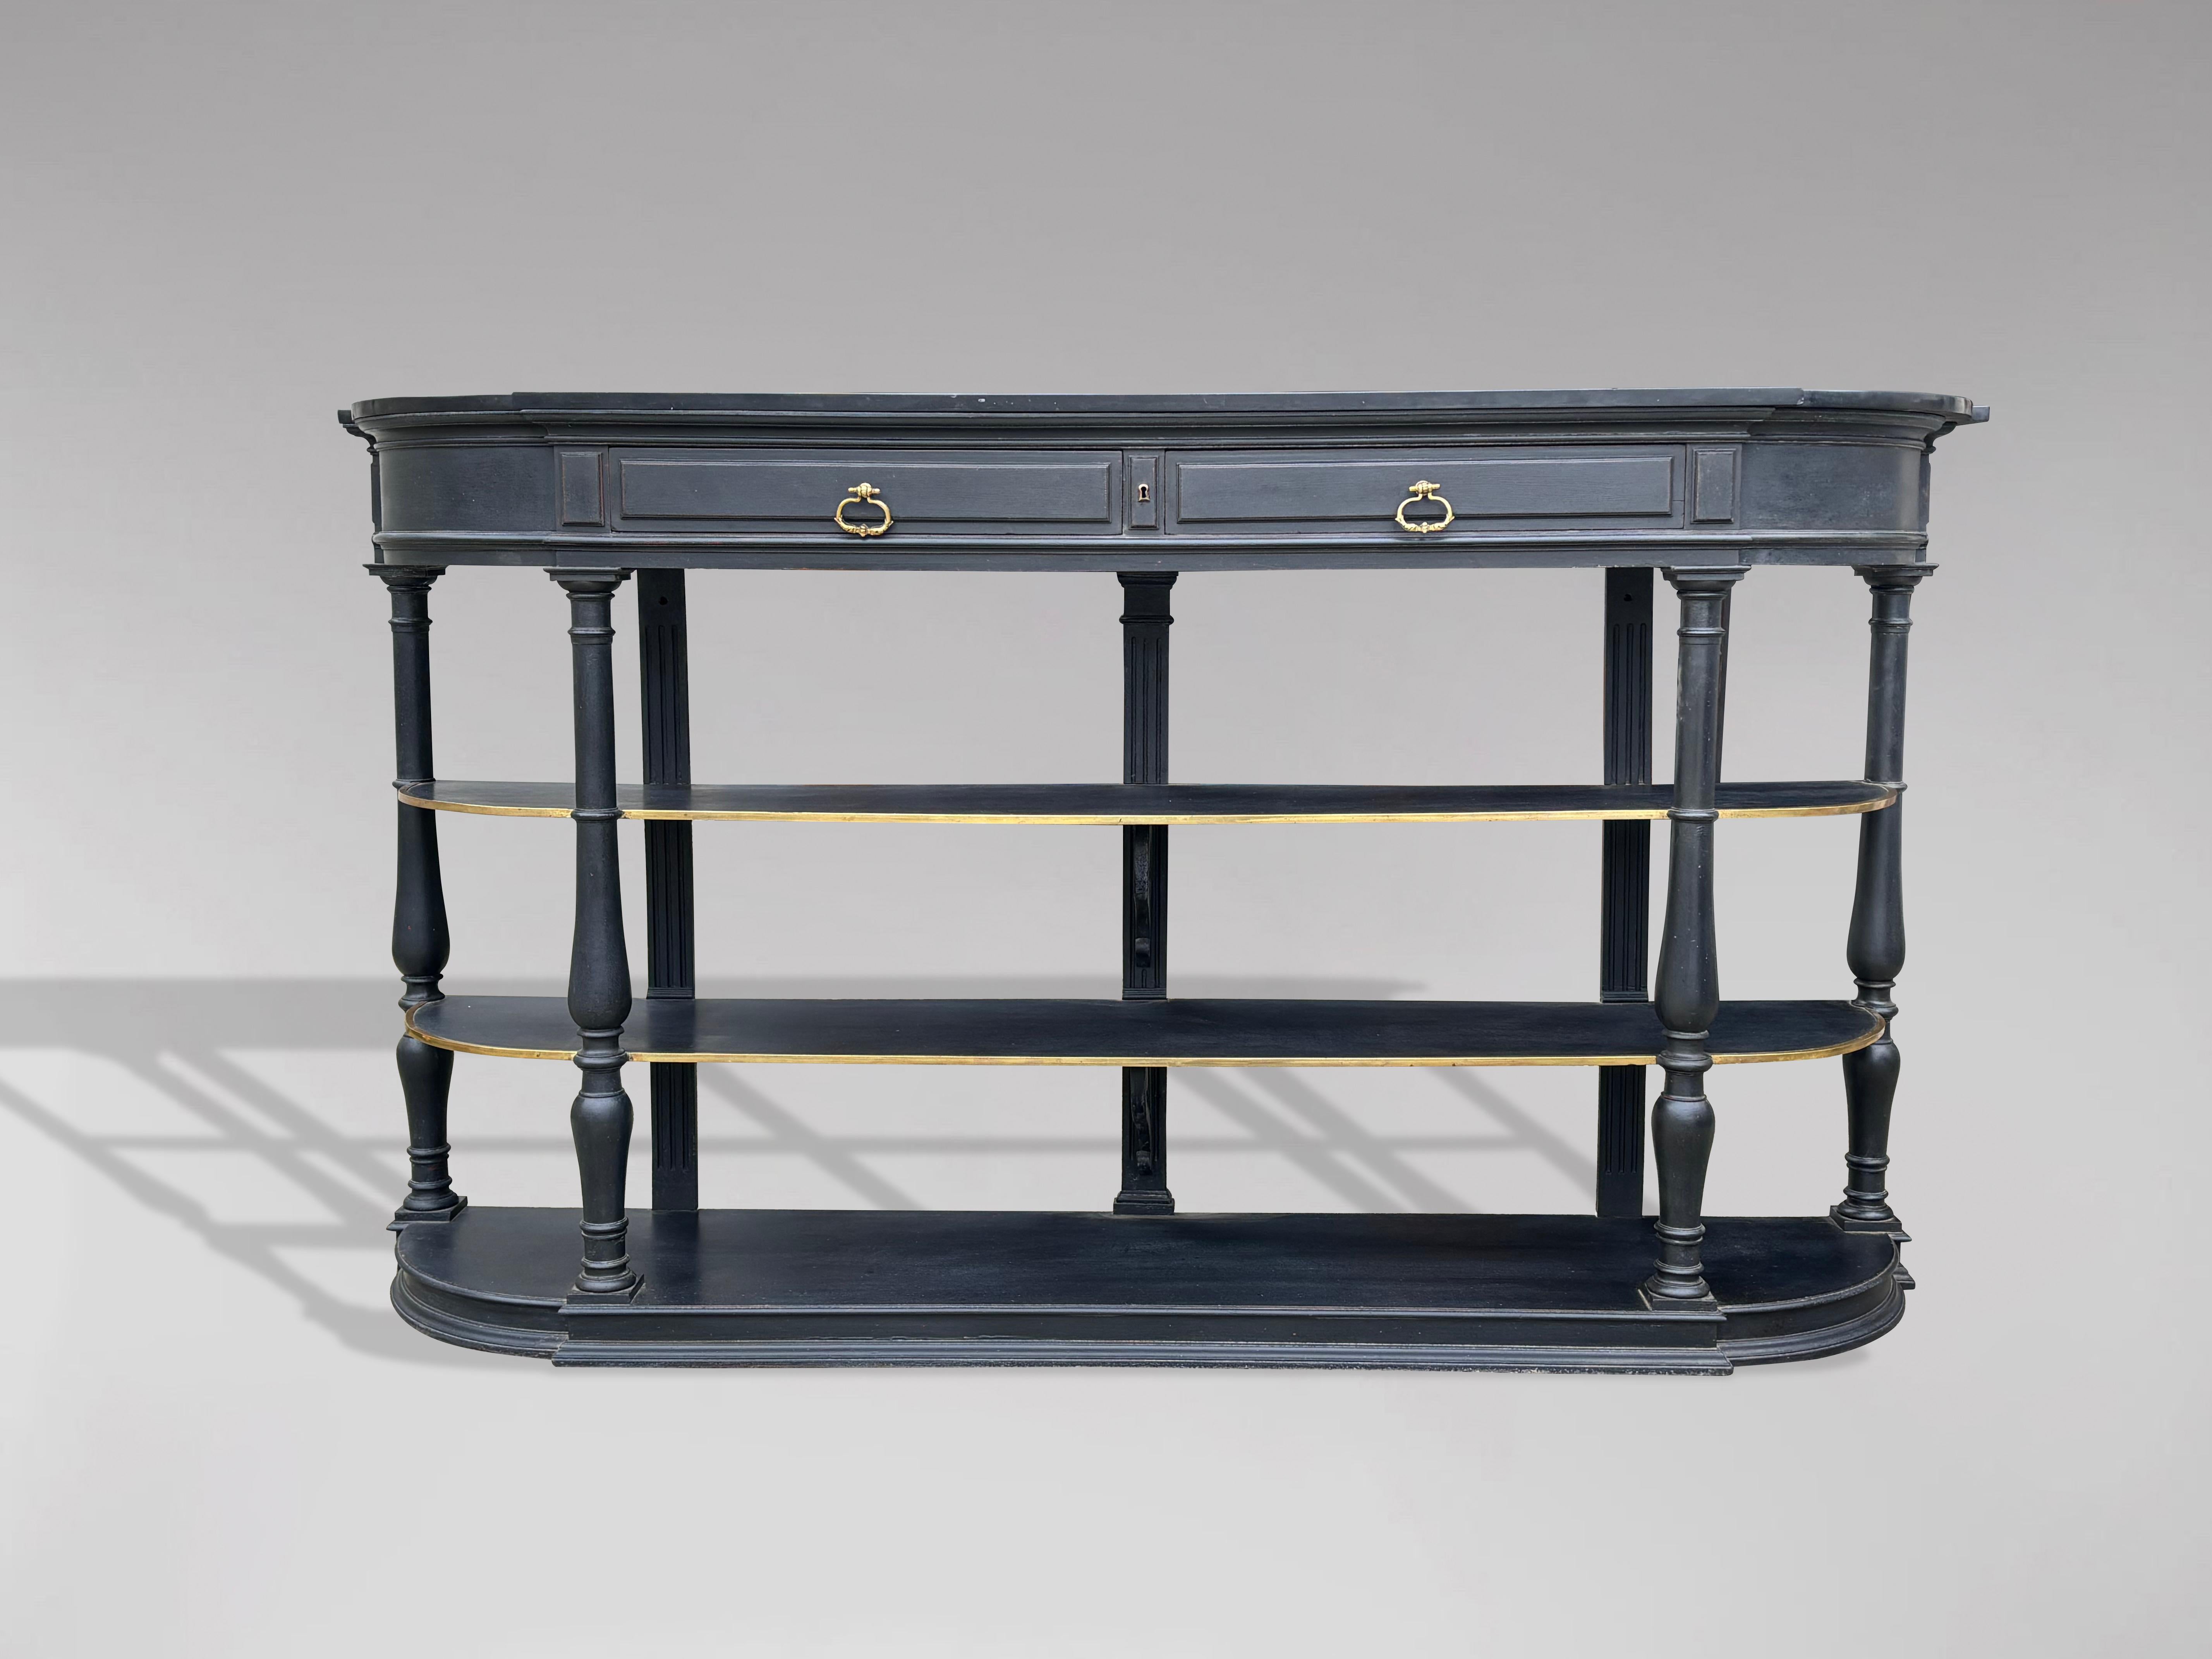 Console française du XIXe siècle en acajou peint, avec un plateau d'origine en marbre noir façonné au-dessus d'une paire de tiroirs avec serrure fonctionnelle, deux étagères solides façonnées avec des accessoires en laiton, soutenues par quatre